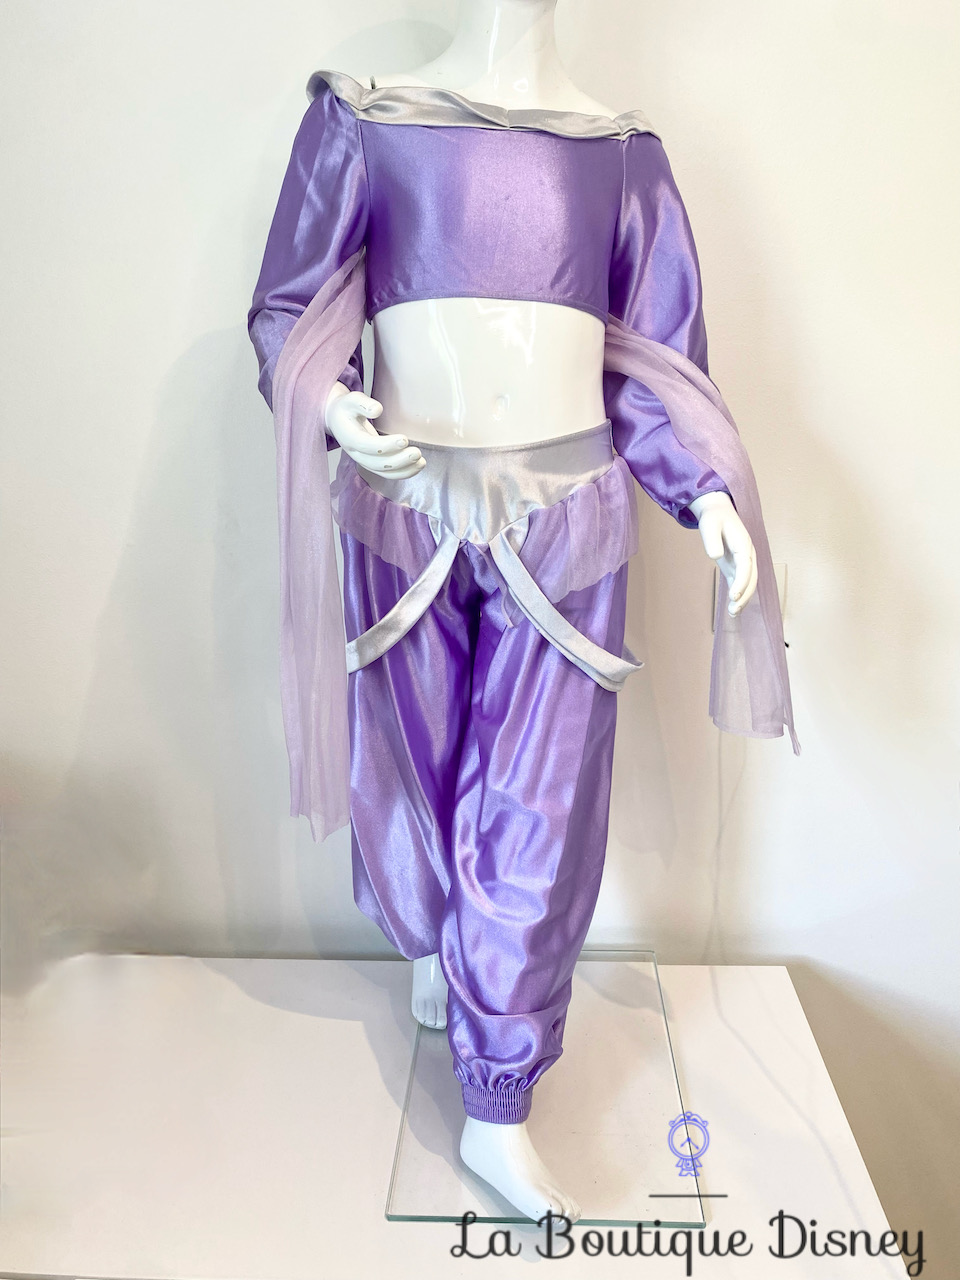 Déguisement Jasmine Aladdin The Disney Store taille 6-8 ans deux pièces violet